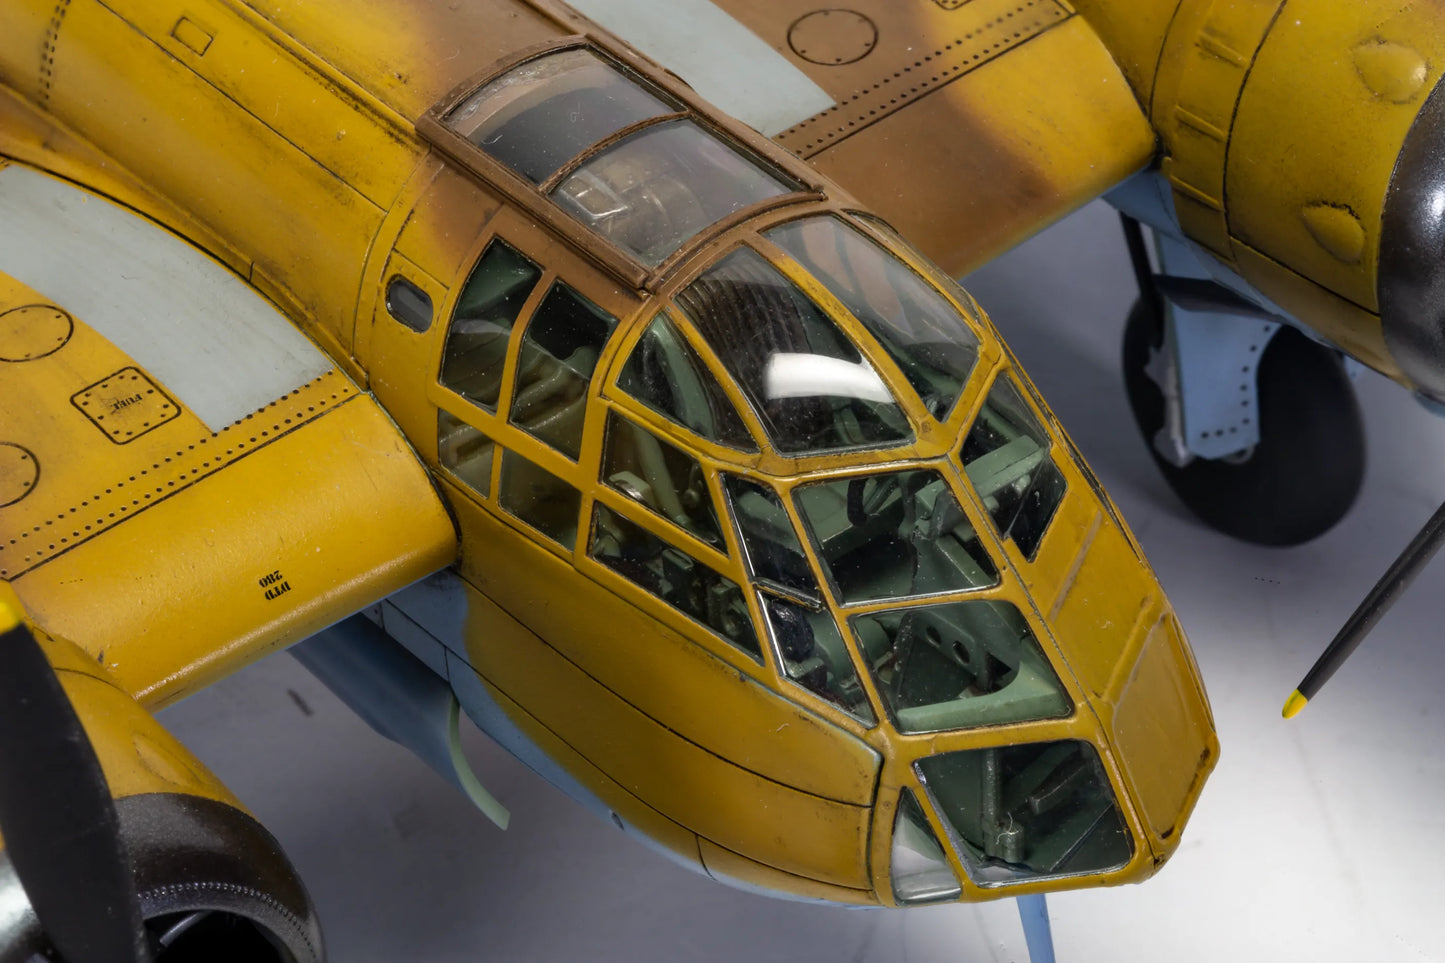 Bristol Blenheim Mk.I 1:48